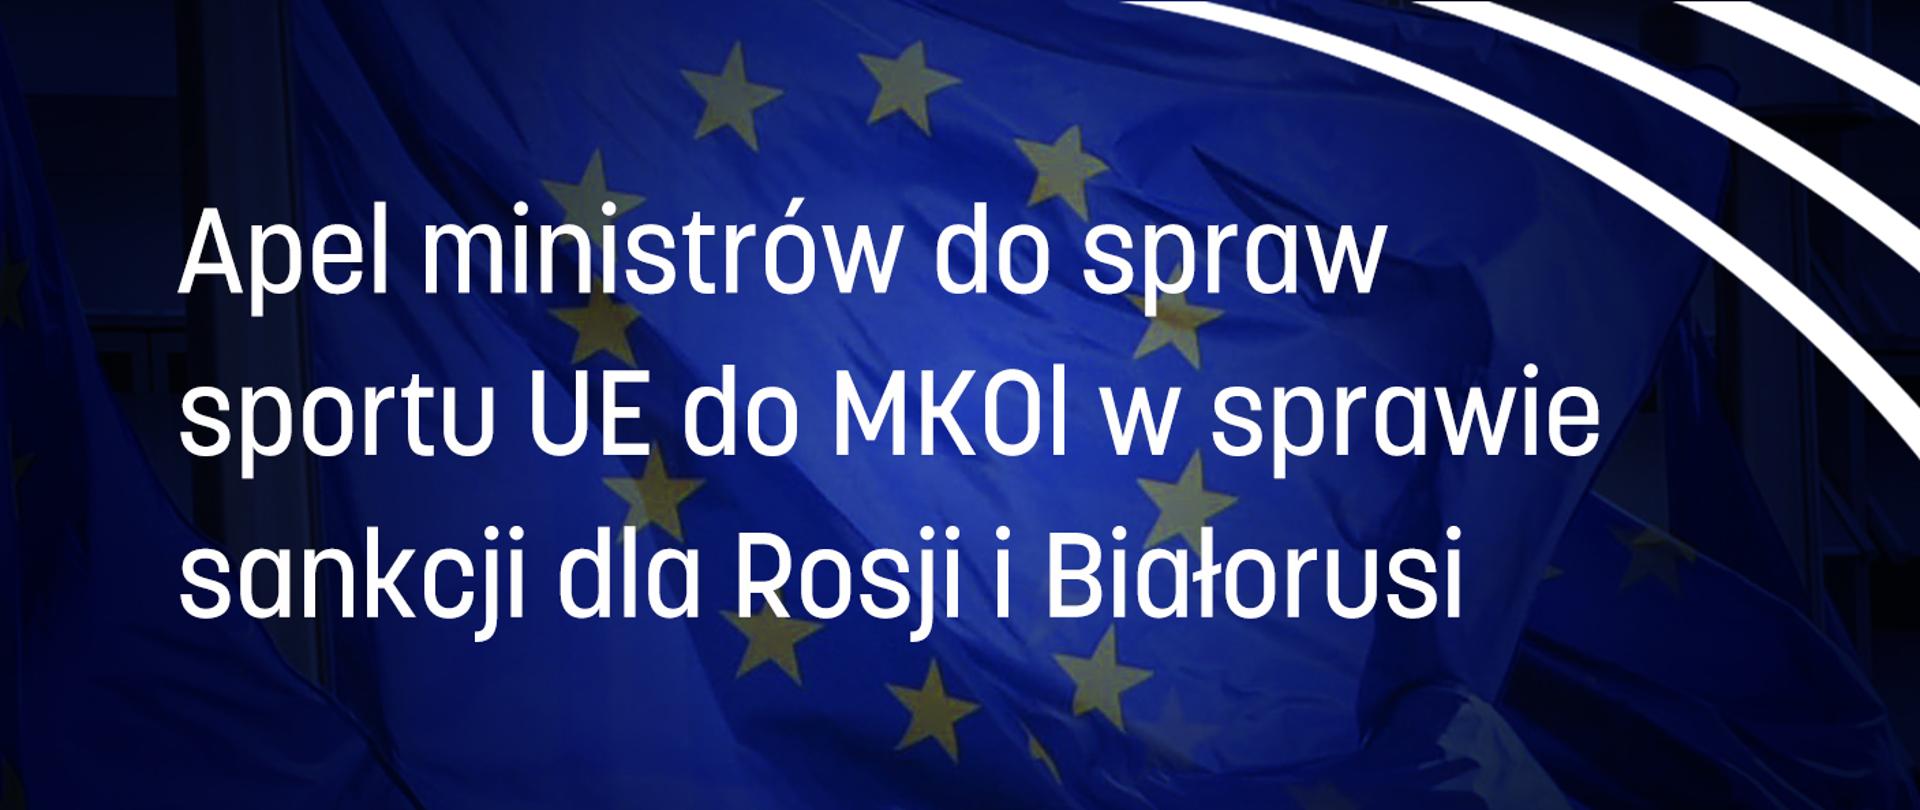 Apel ministrów do spraw sportu UE do MKOl w sprawie sankcji dla Rosji i Białorusi - plansza z białym napisem na tle flagi Unii Europejskiej